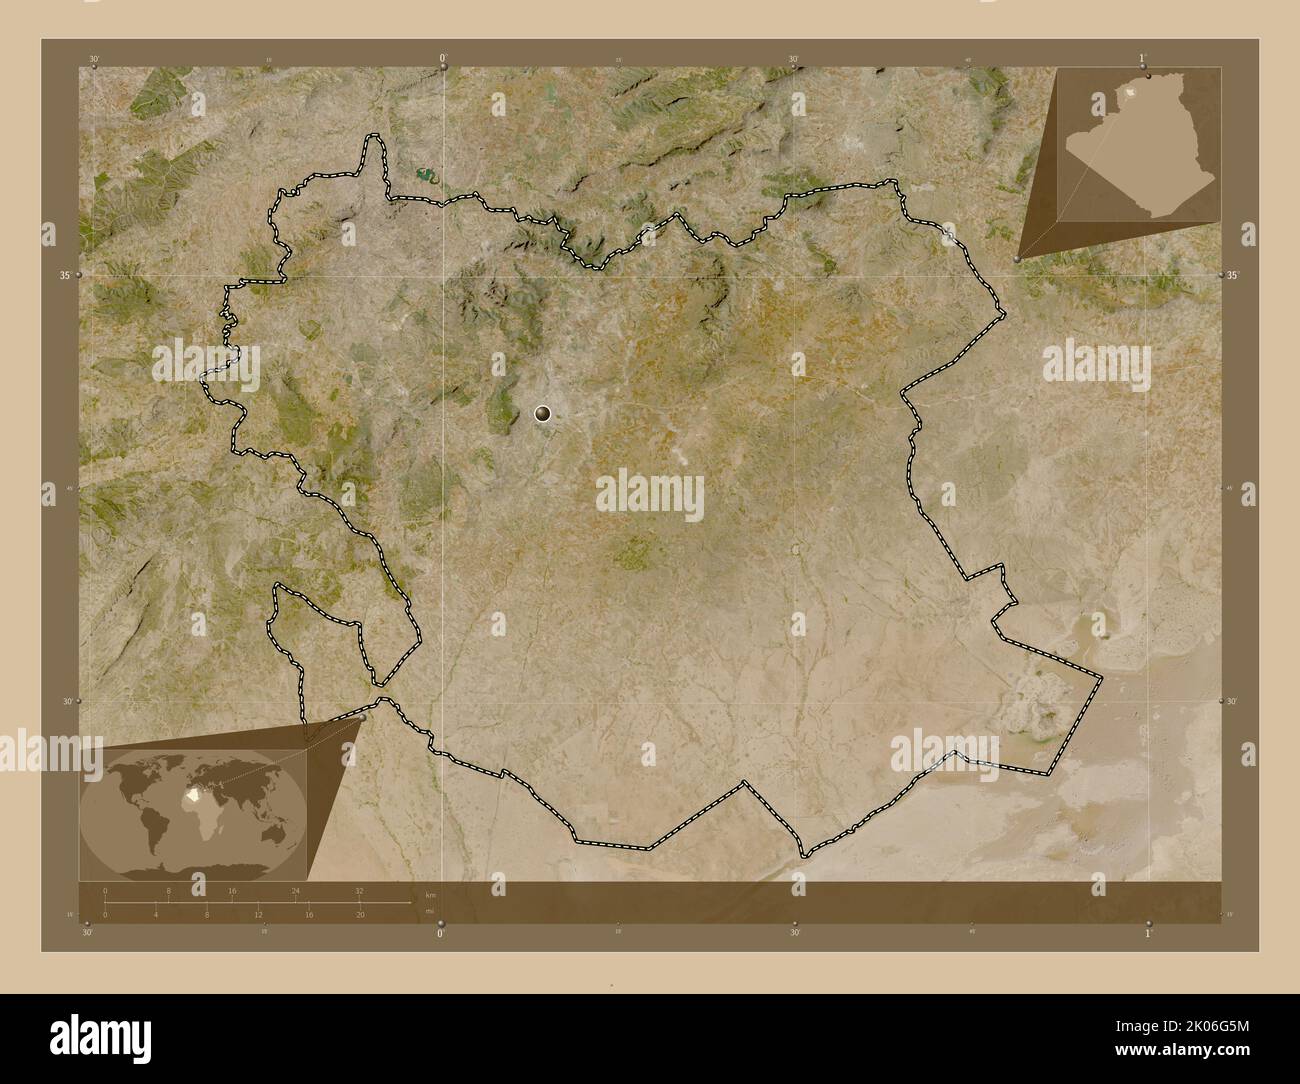 Saida, province d'Algérie. Carte satellite basse résolution. Cartes d'emplacement auxiliaire d'angle Banque D'Images